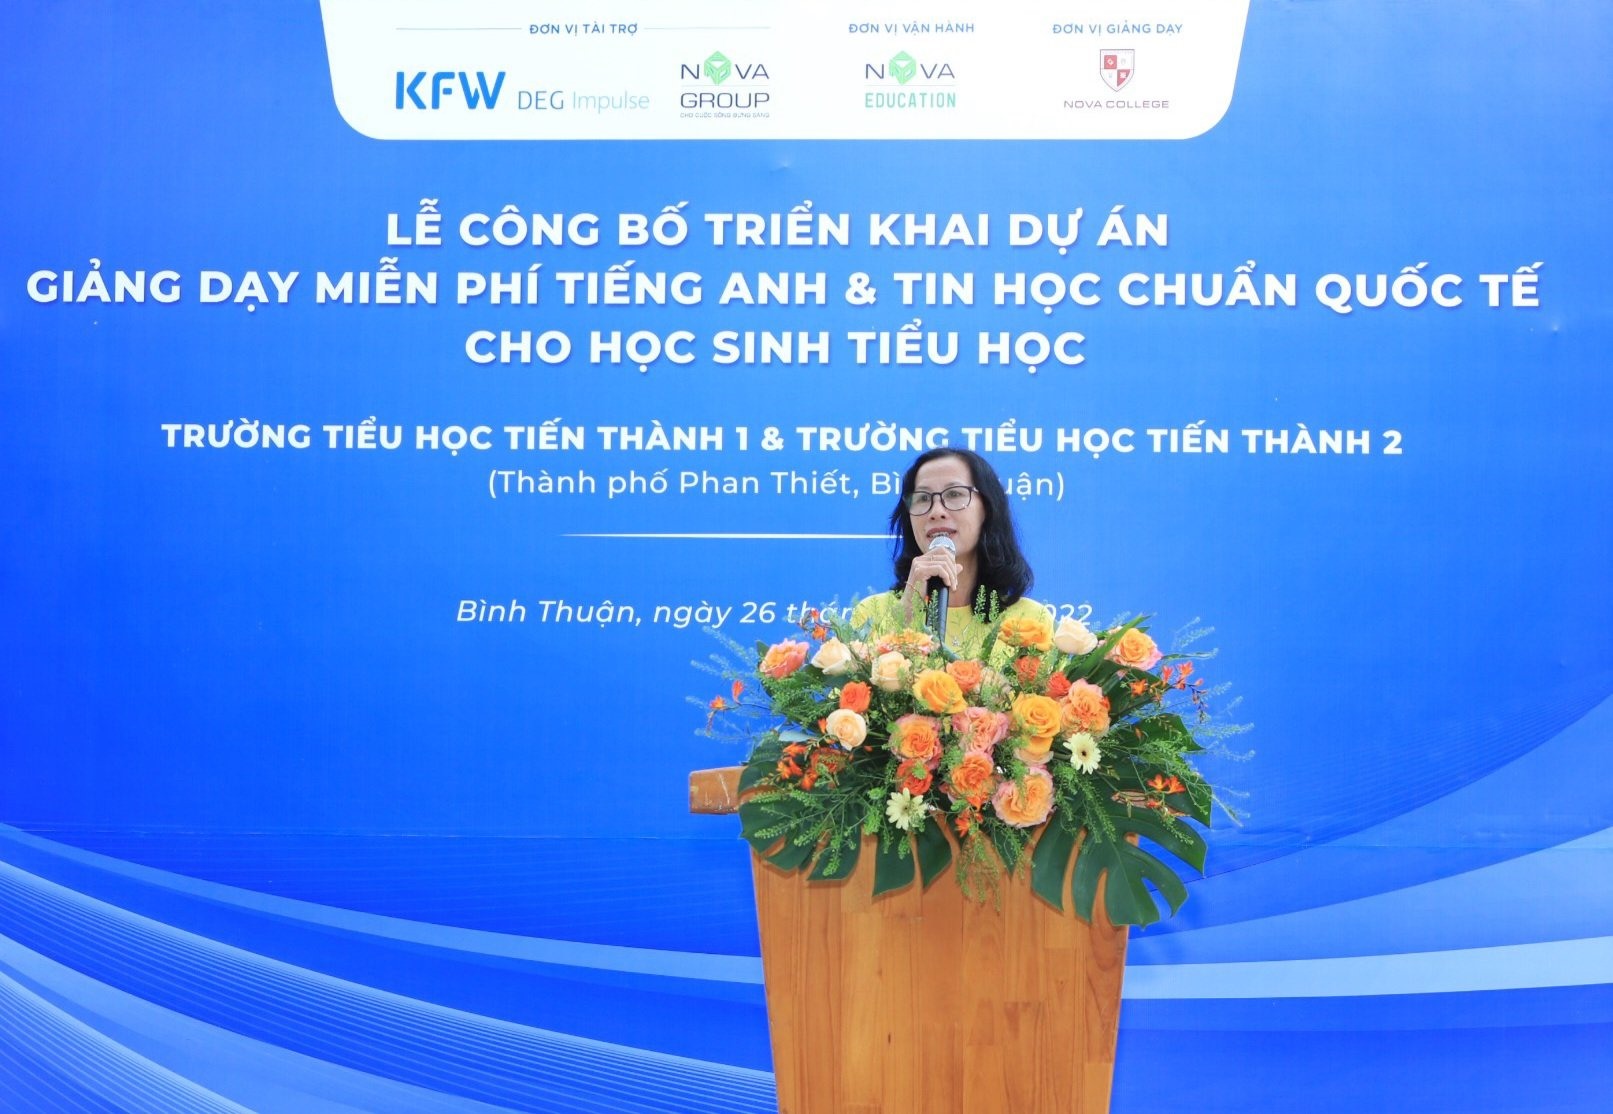 Bà Nguyễn Thị Thu Huyền – Hiệu trưởng Trường Tiểu học Tiến Thành 1 vui mừng khi các em học sinh của trường được tiếp cận phương pháp dạy học Tiếng Anh và Tin học chuẩn quốc tế.